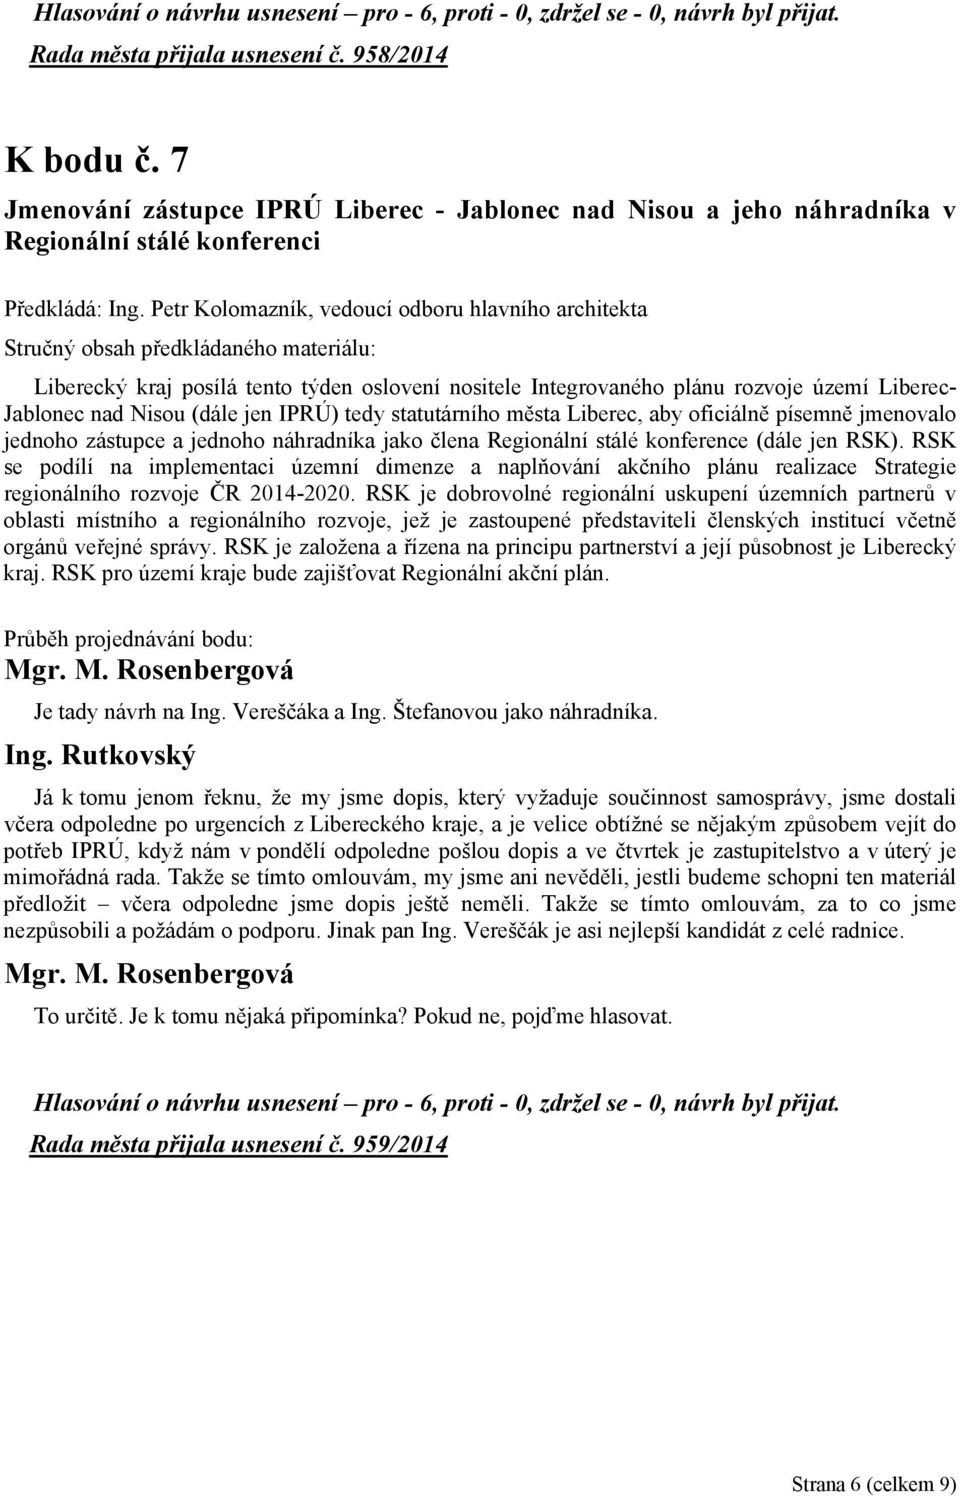 města Liberec, aby oficiálně písemně jmenovalo jednoho zástupce a jednoho náhradníka jako člena Regionální stálé konference (dále jen RSK).